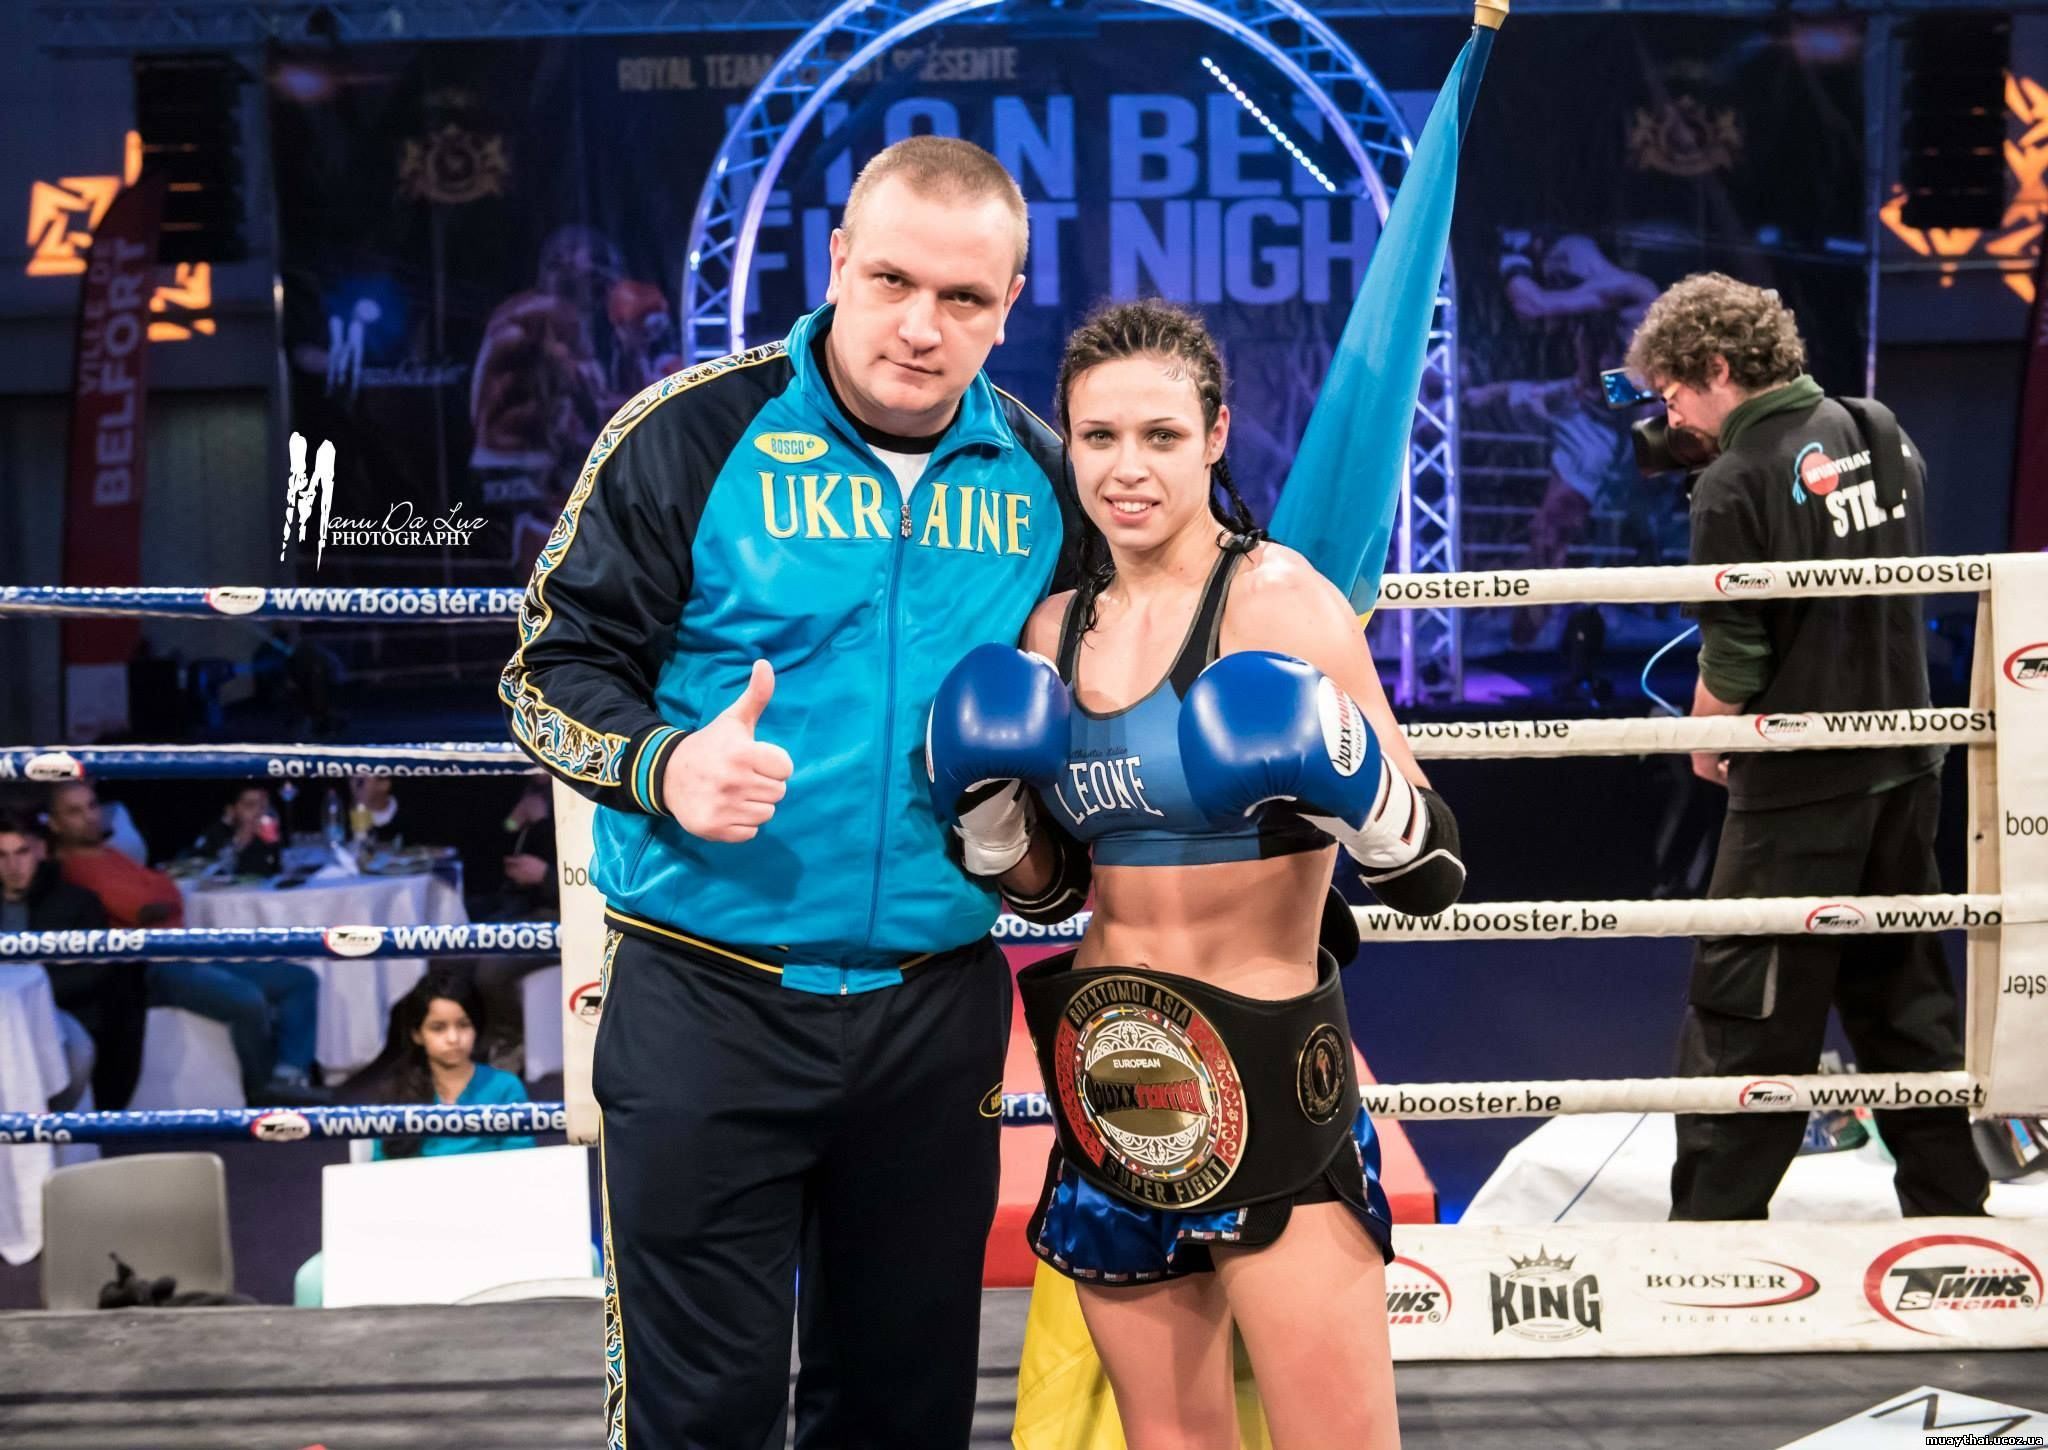 Українка Овчиннікова проведе бій за титул чемпіона світу WBC муай-тай у Львові